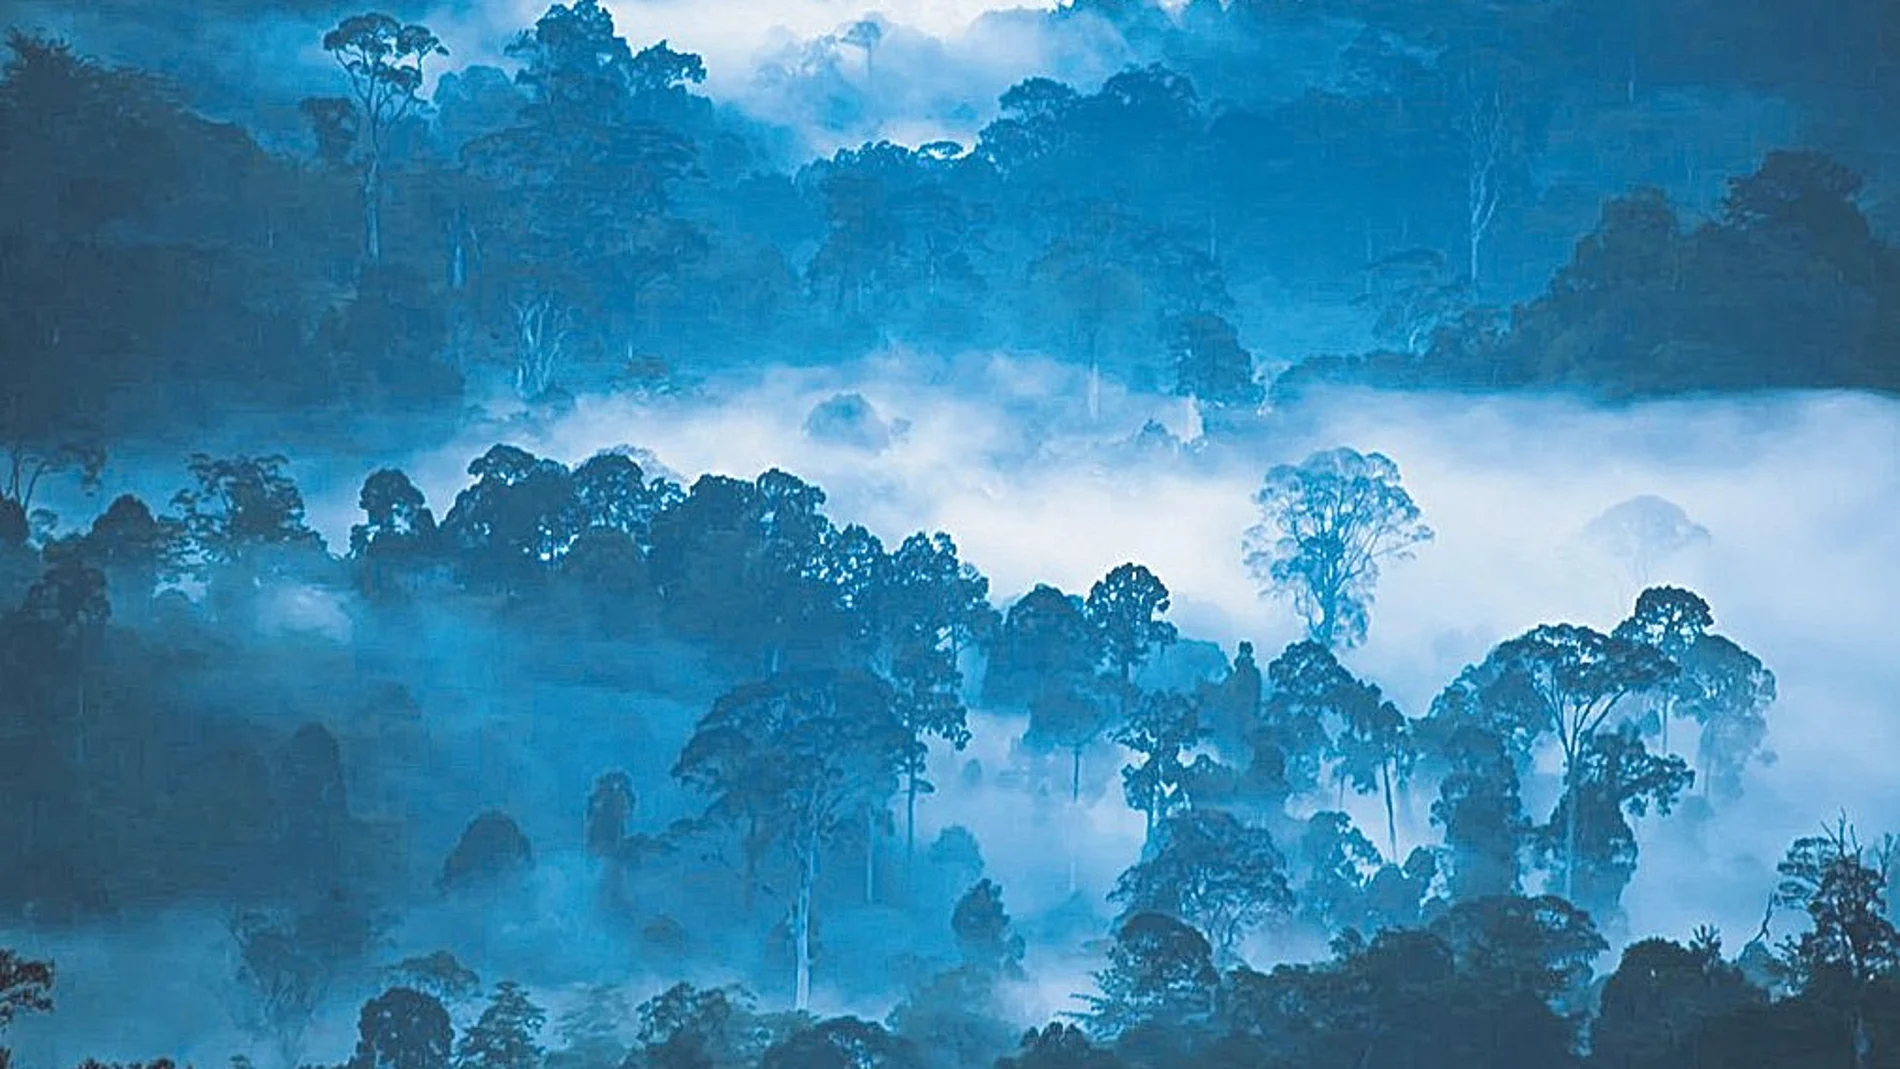 Los investigadores alertan de pérdidas alarmantes de espacios naturales. Desde la década de 1990, se ha perdido un área silvestre equivalente a dos veces el tamaño de Alaska y la mitad del tamaño de la Amazonia.